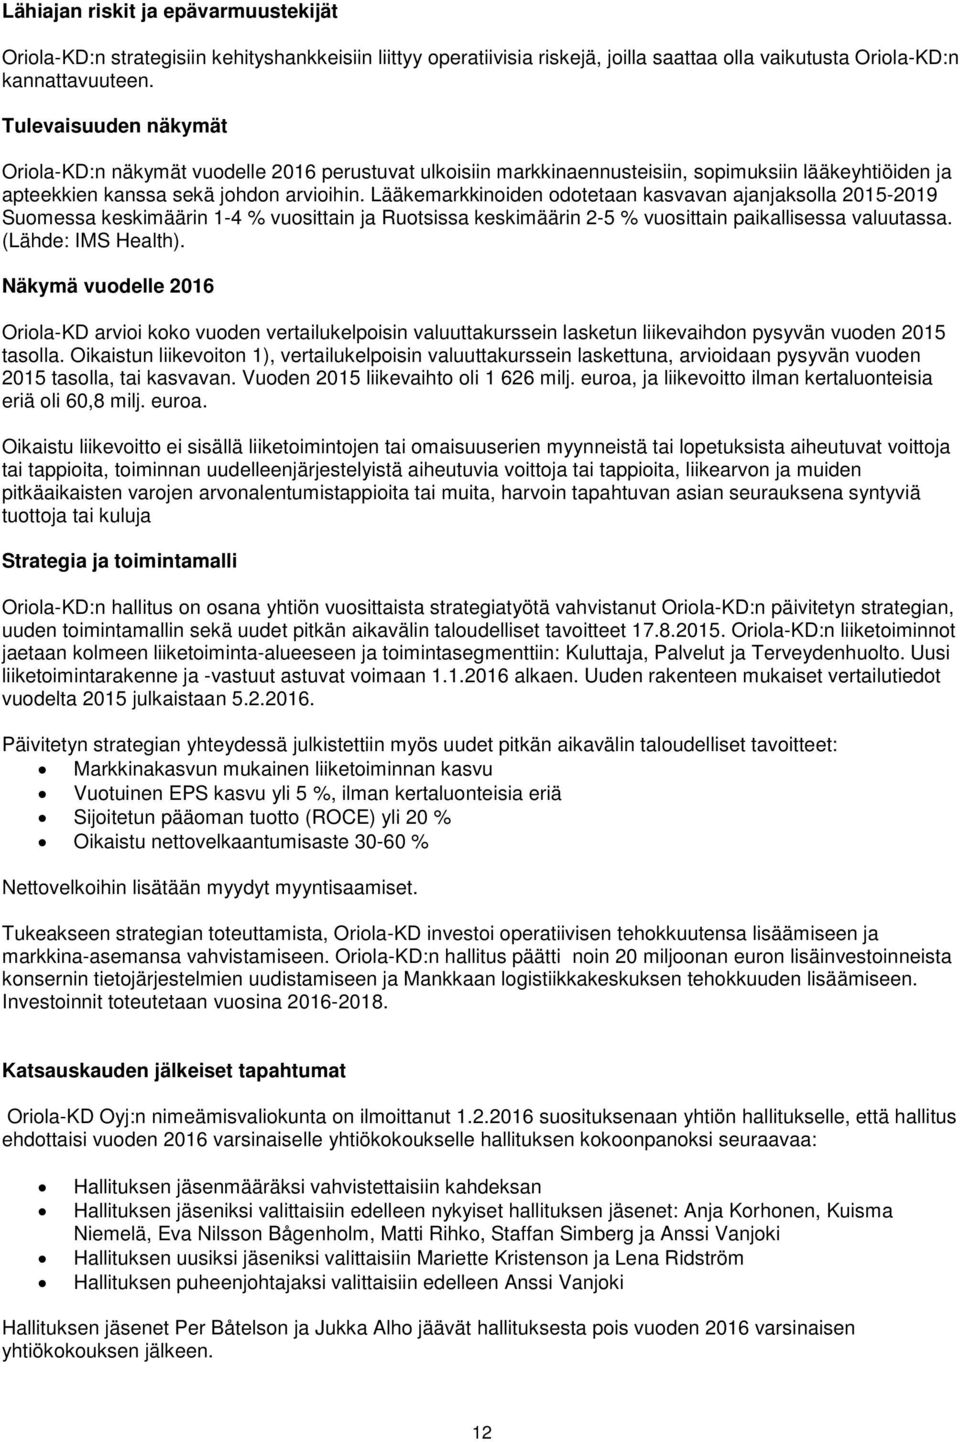 Lääkemarkkinoiden odotetaan kasvavan ajanjaksolla 2015-2019 Suomessa keskimäärin 1-4 % vuosittain ja Ruotsissa keskimäärin 2-5 % vuosittain paikallisessa valuutassa. (Lähde: IMS Health).